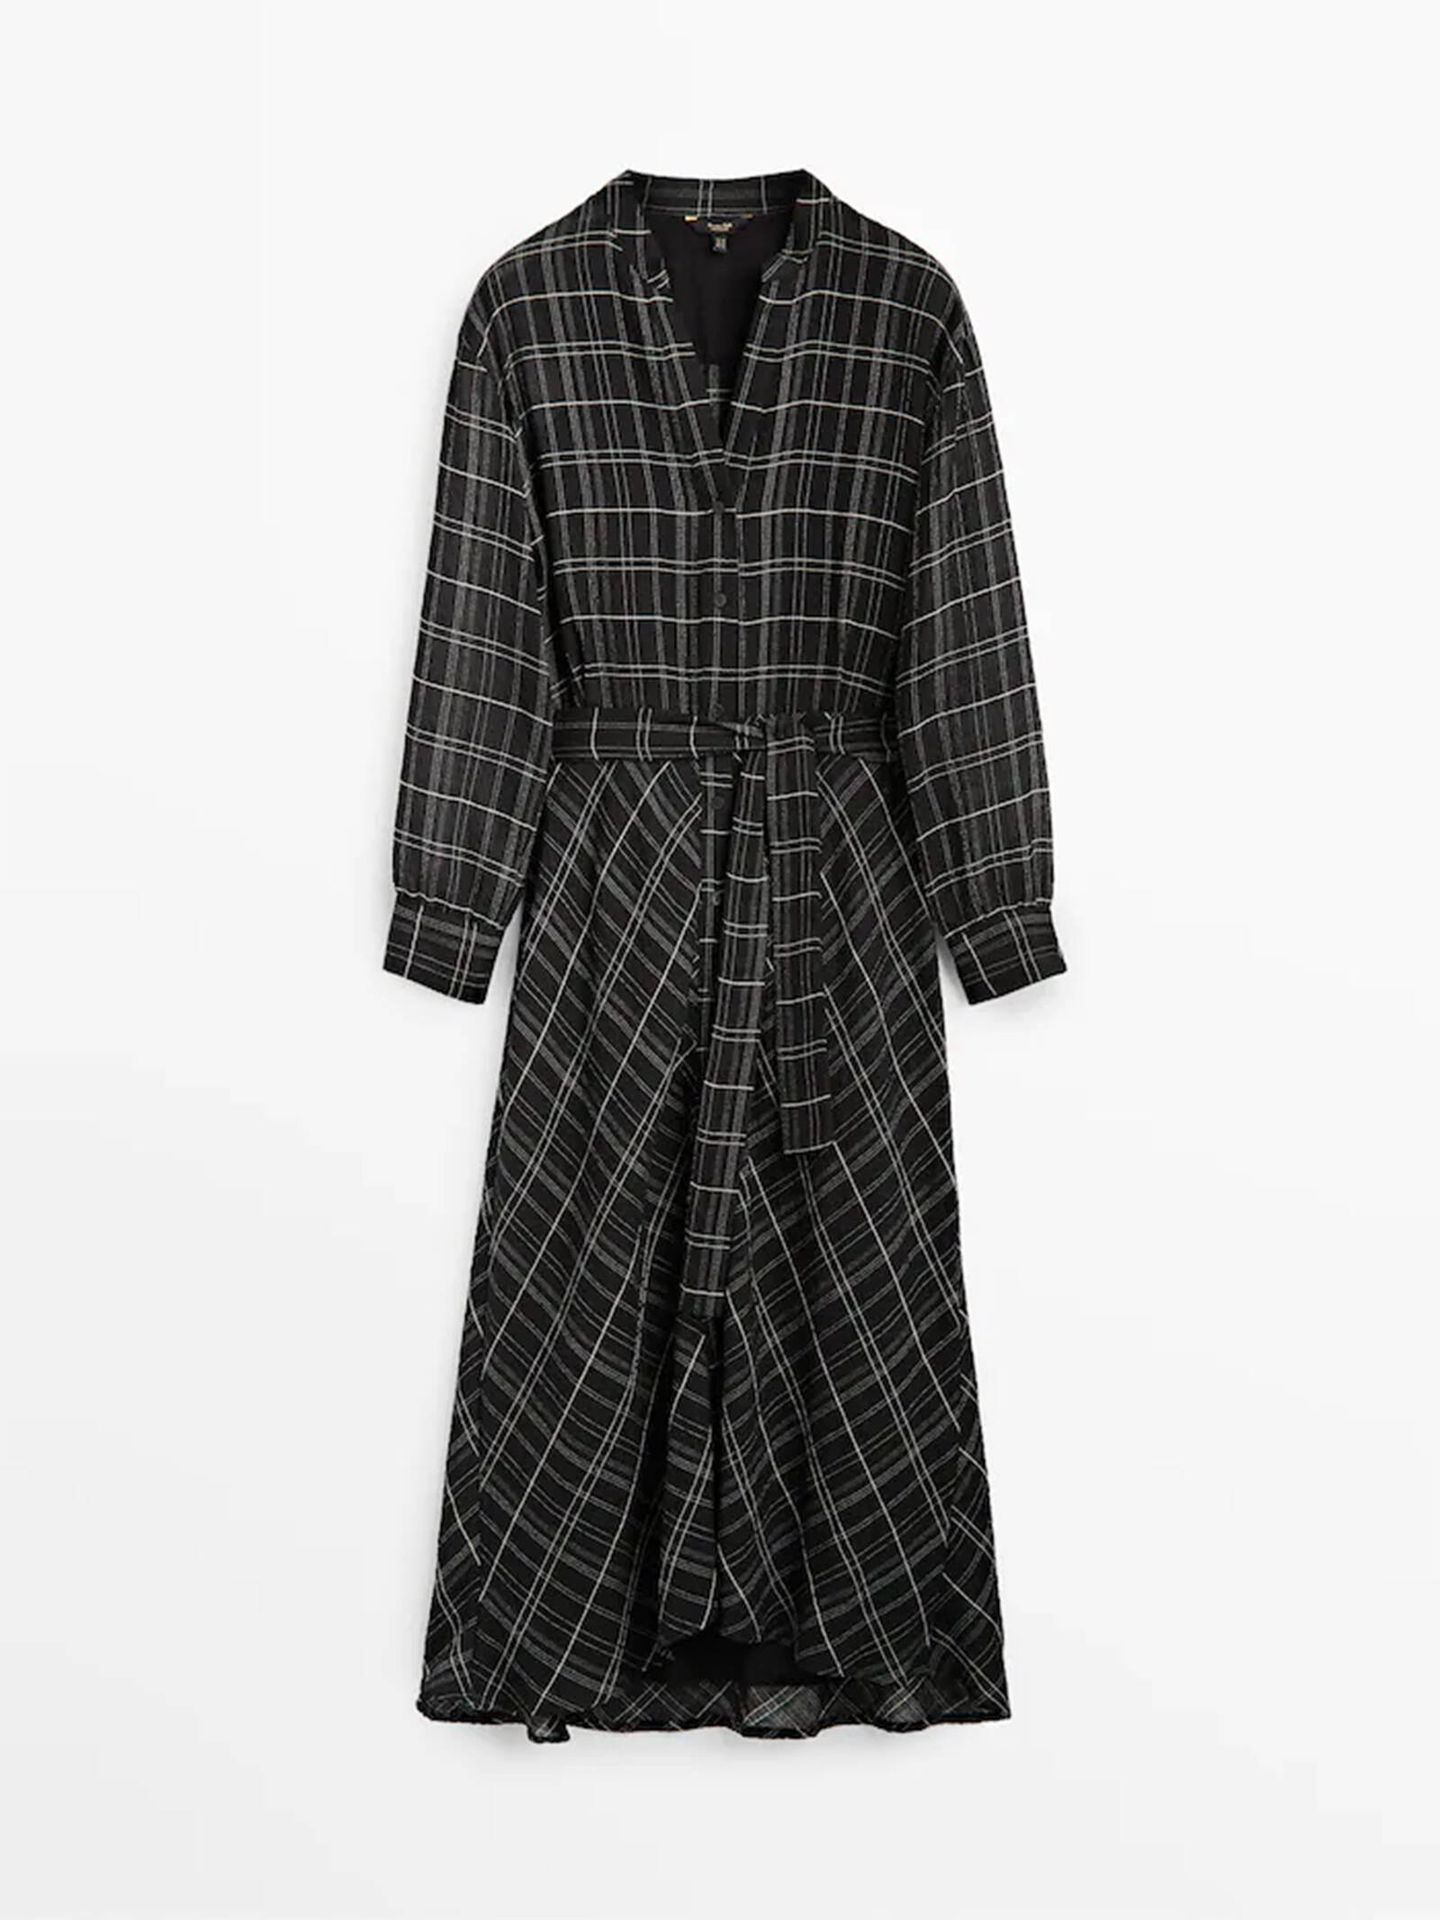 El vestido camisero de Massimo Dutti con estampado de cuadros que necesitas en tu armario. (Cortesía)